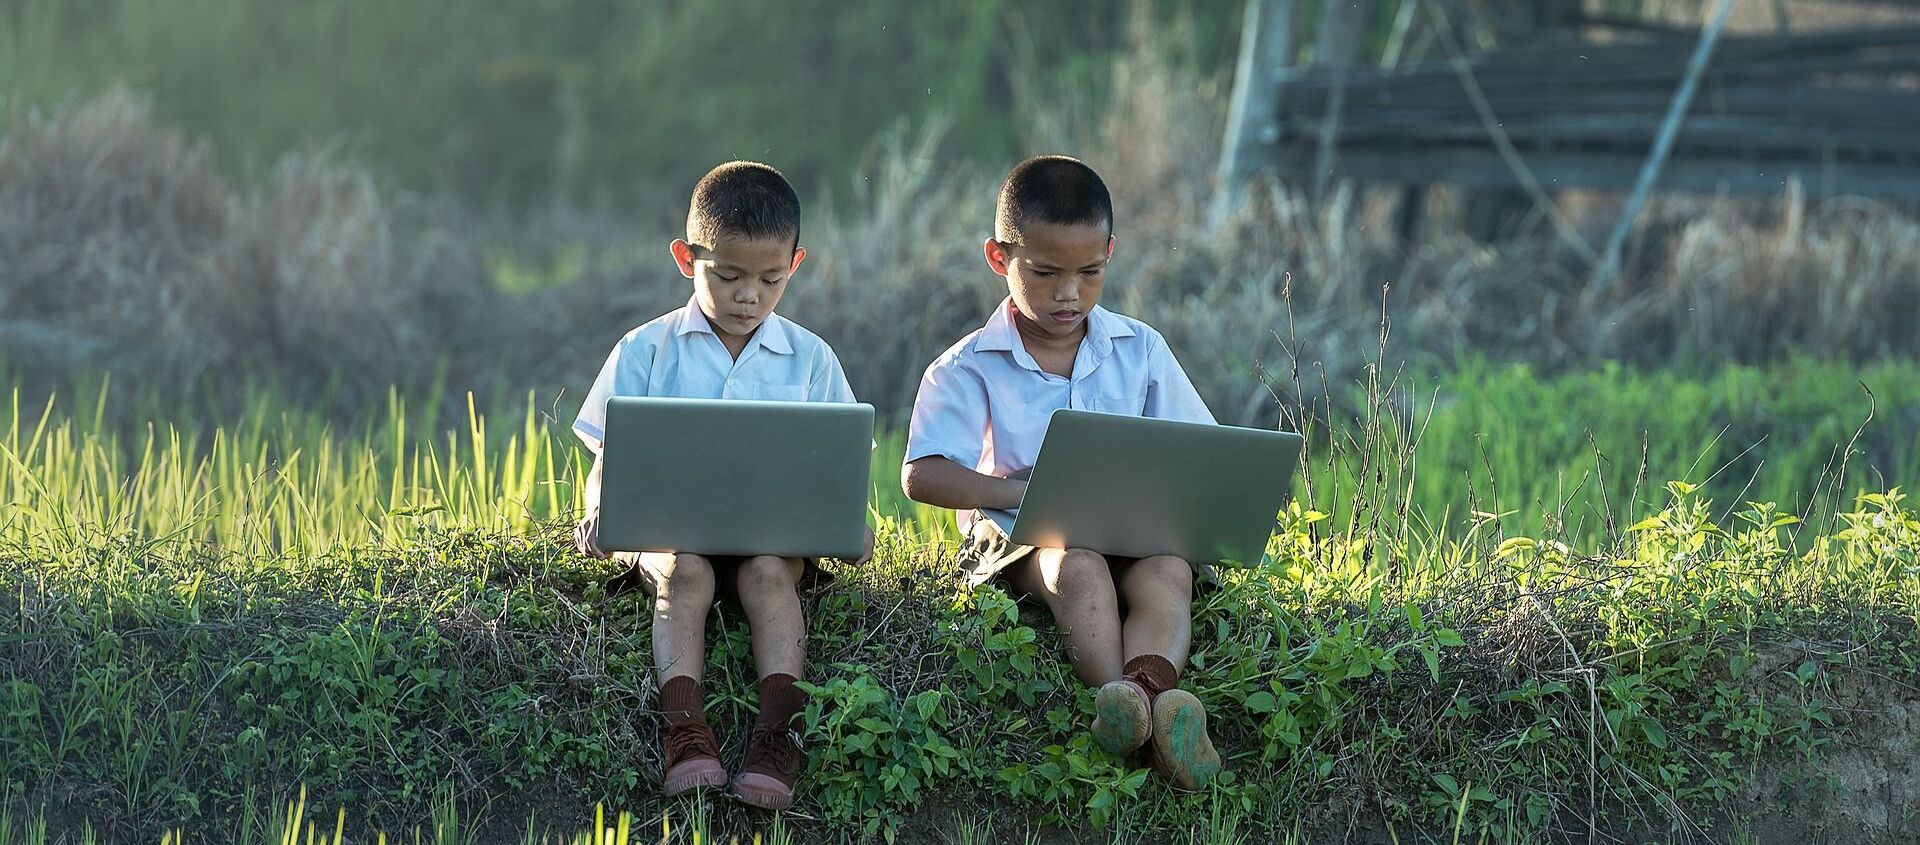 Dos niños usando ordenadores portátiles - Sputnik Mundo, 1920, 06.08.2020